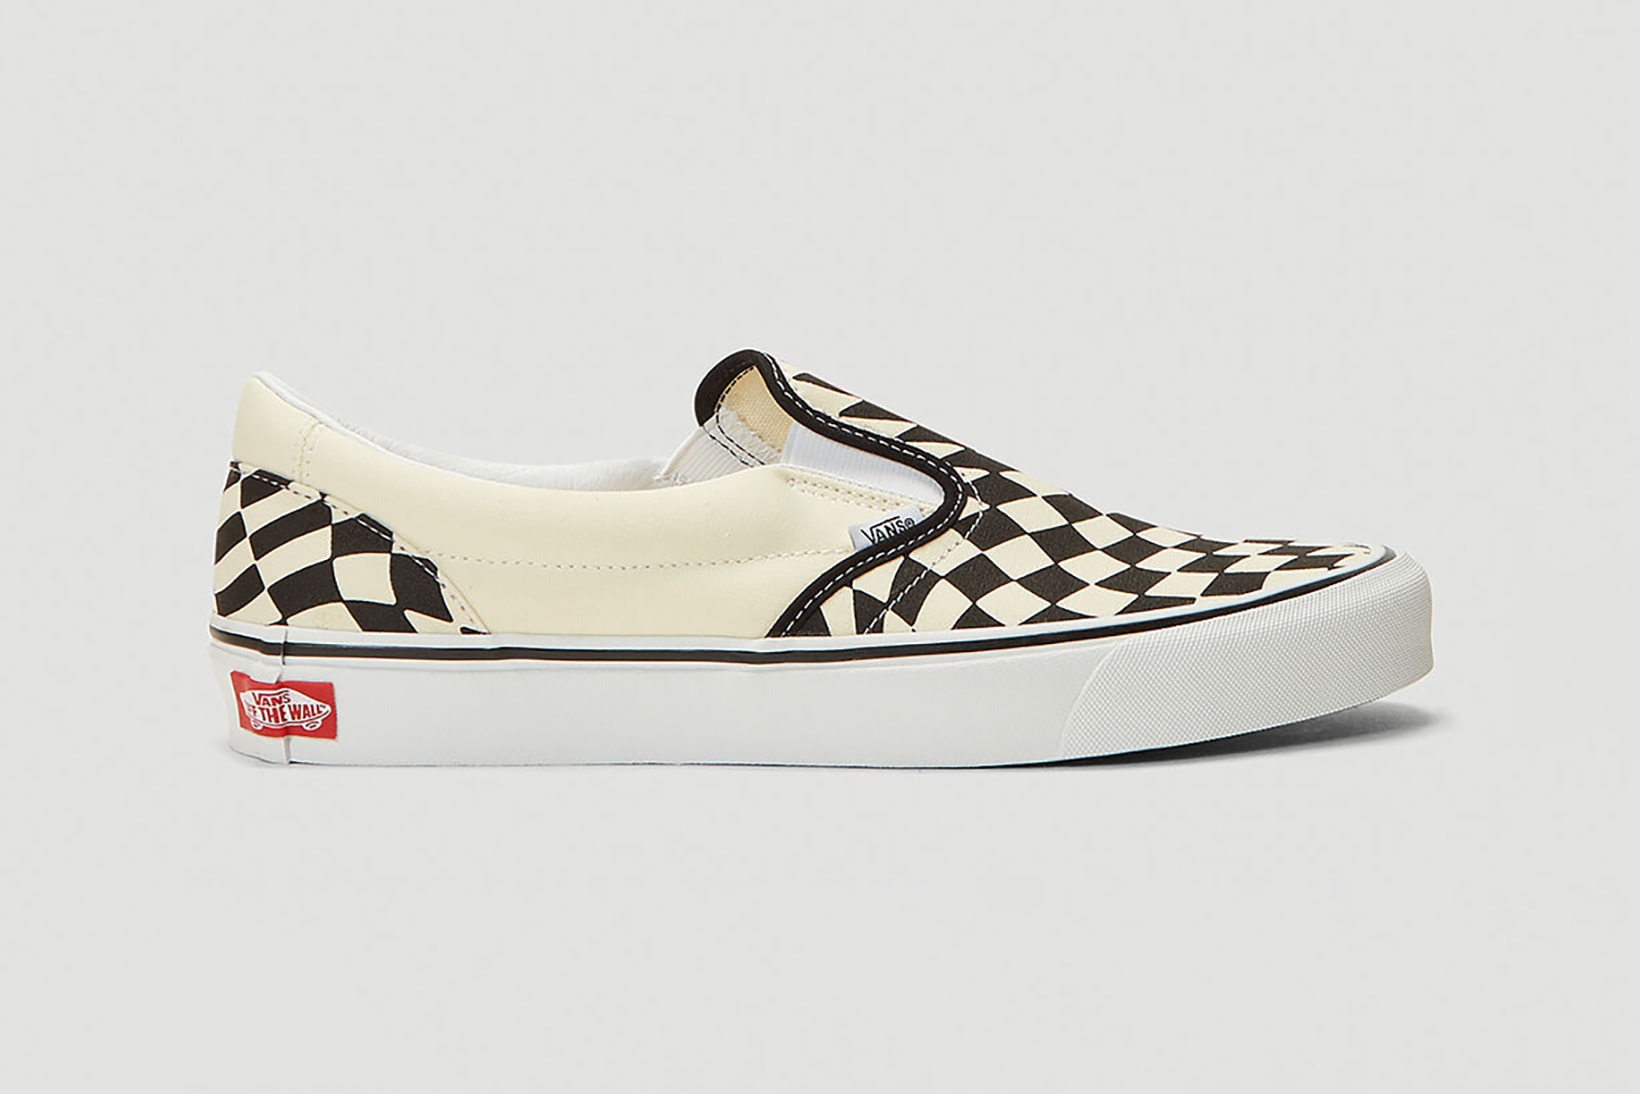 Vans Checkerboard Slip-On Twist Sneakers Release | Hypebae